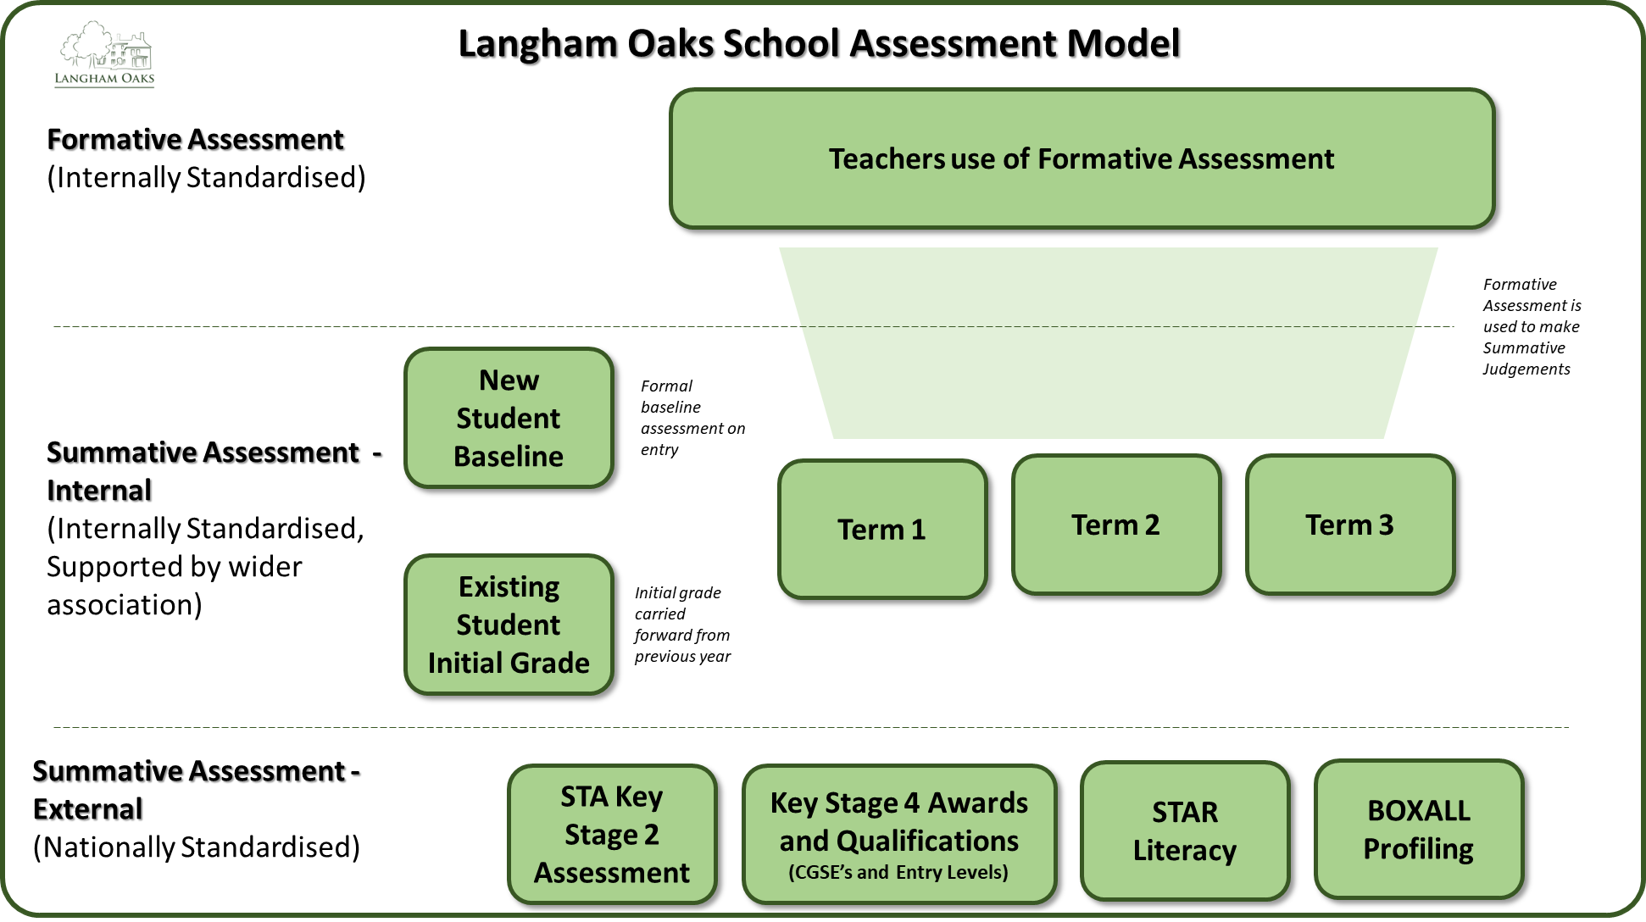 Assessment at Langham Oaks